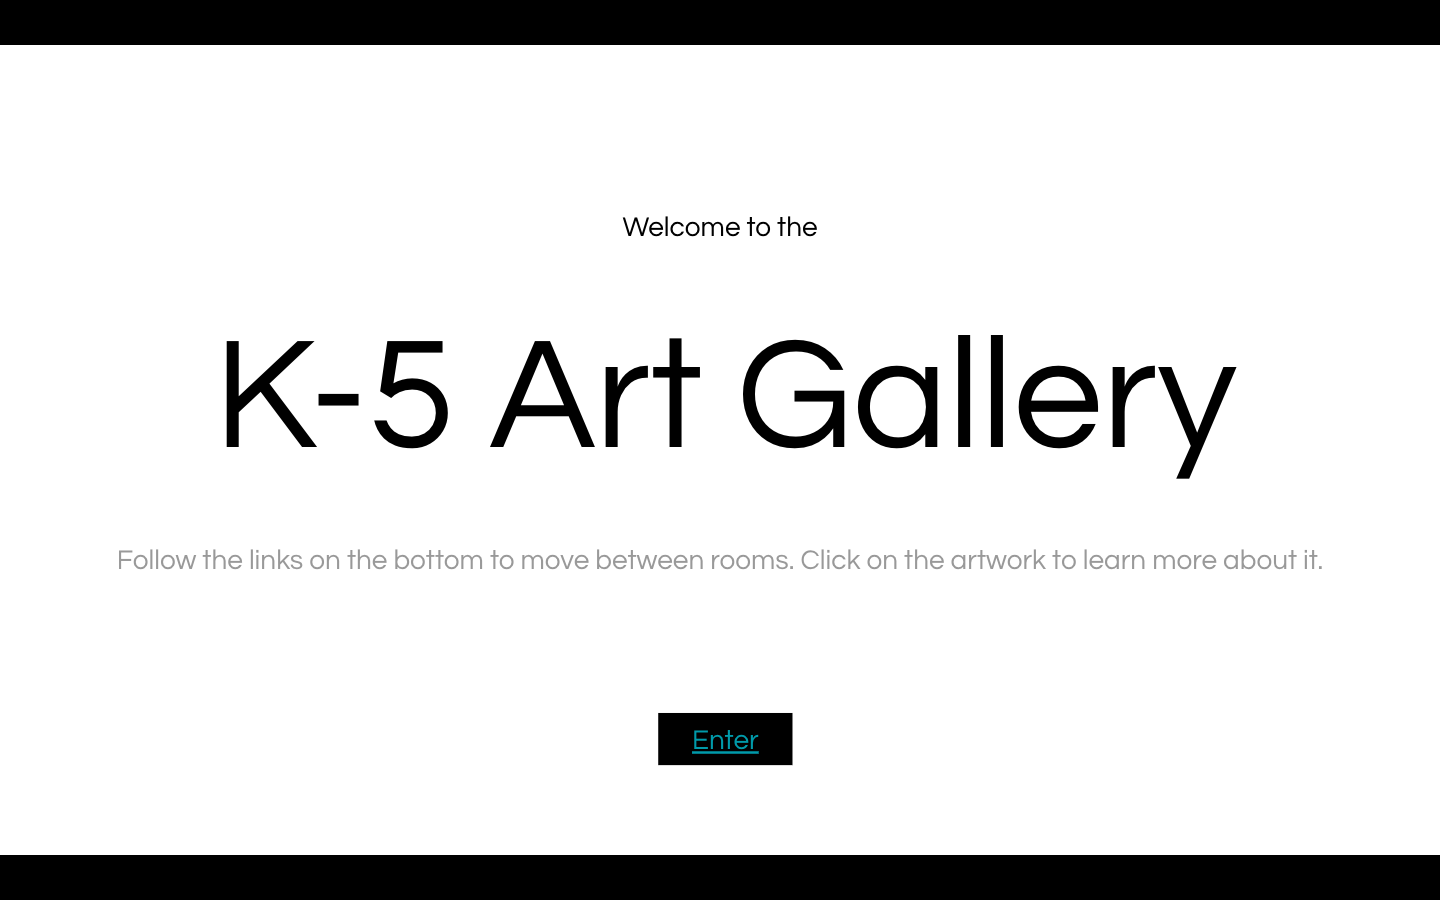 K5 Art Gallery 